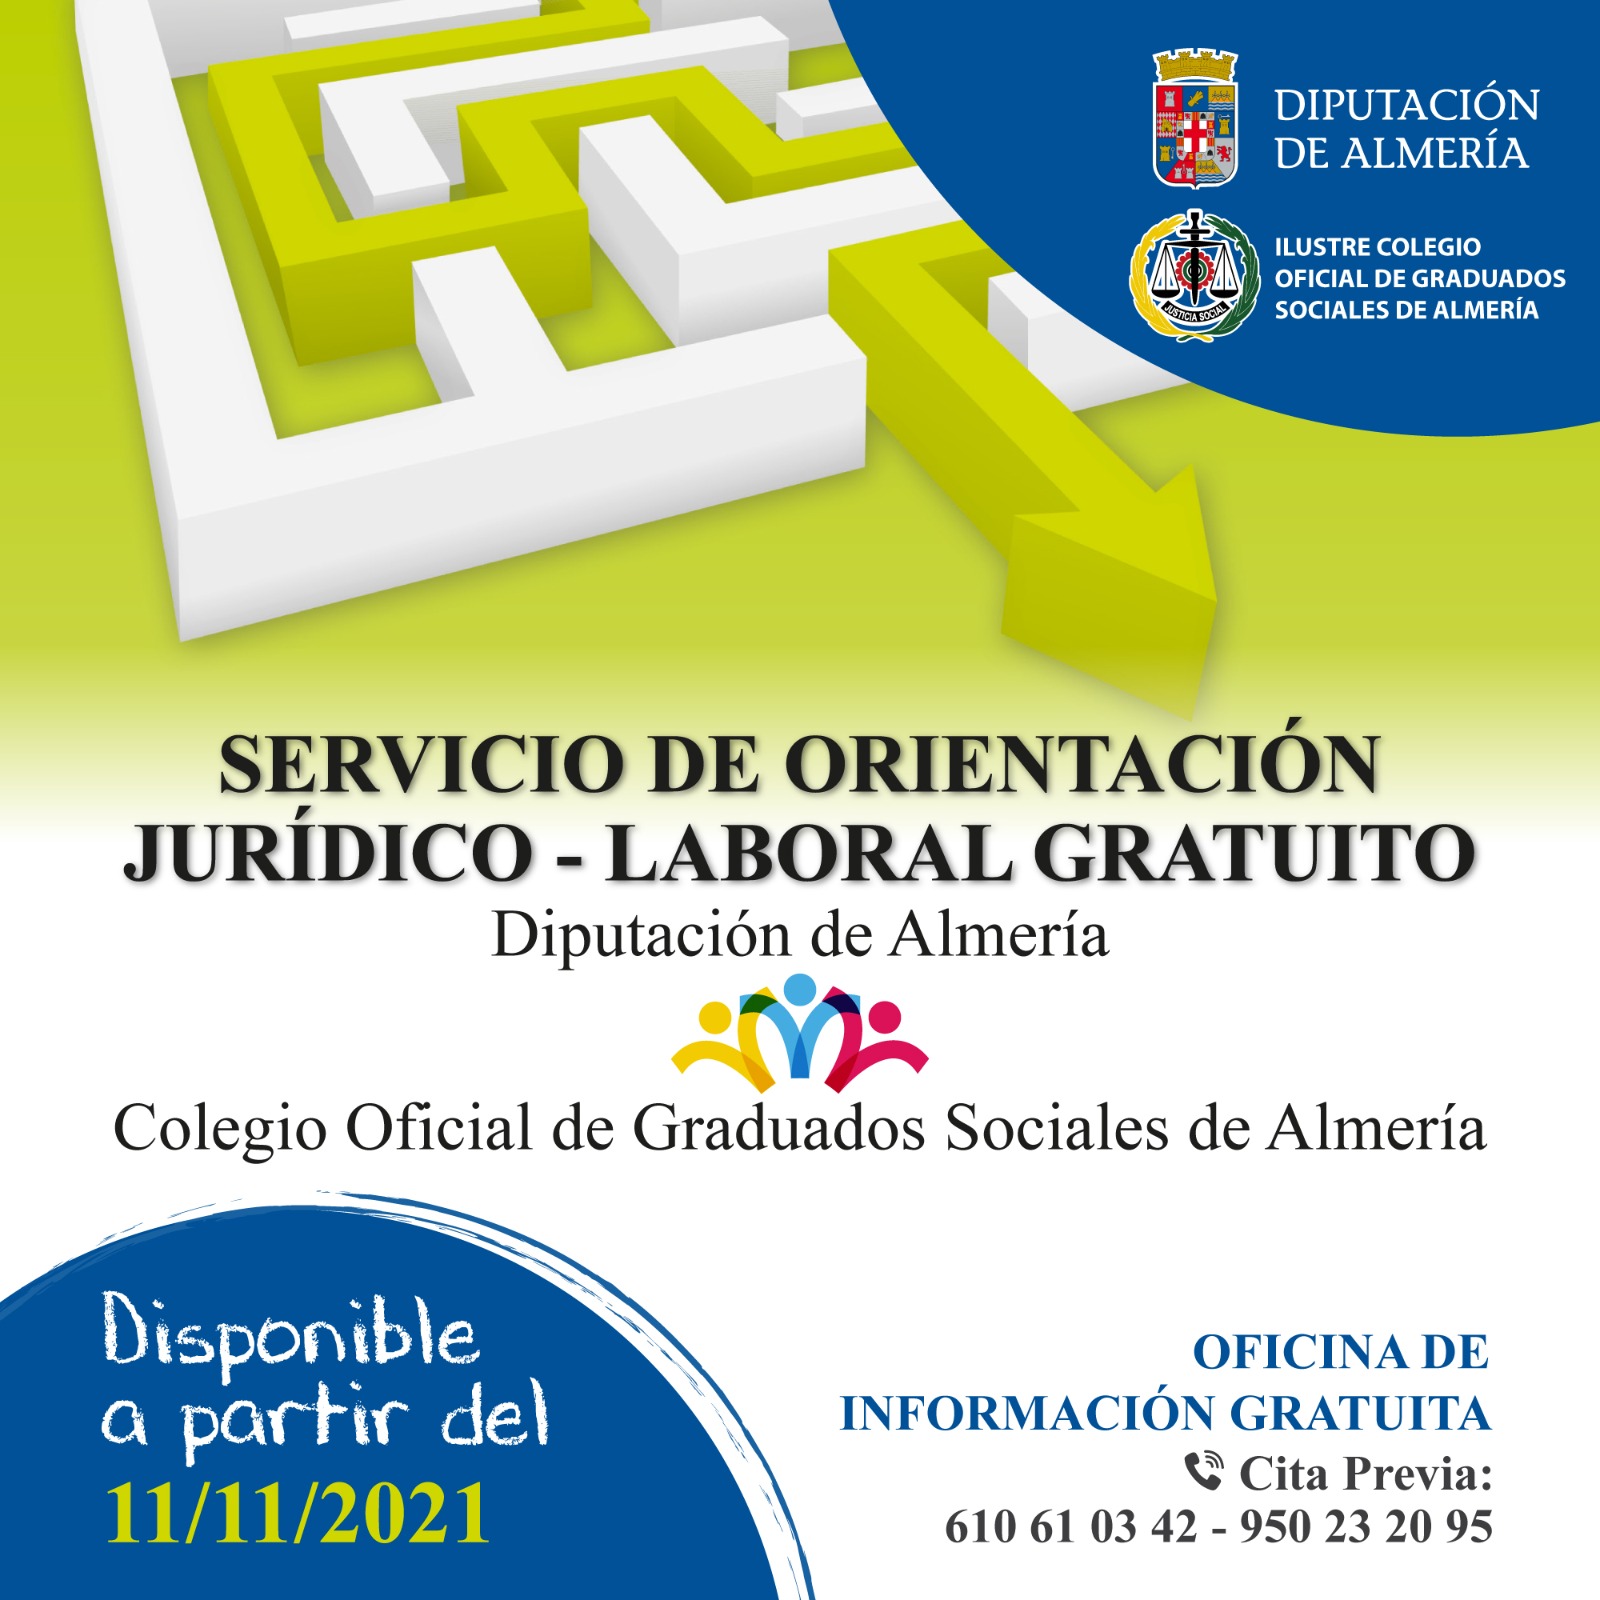 SERVICIO DE ORIENTACION JURÍDICO-LABORAL GRATUITO PARA VECINOS DE OLULA DE CASTRO